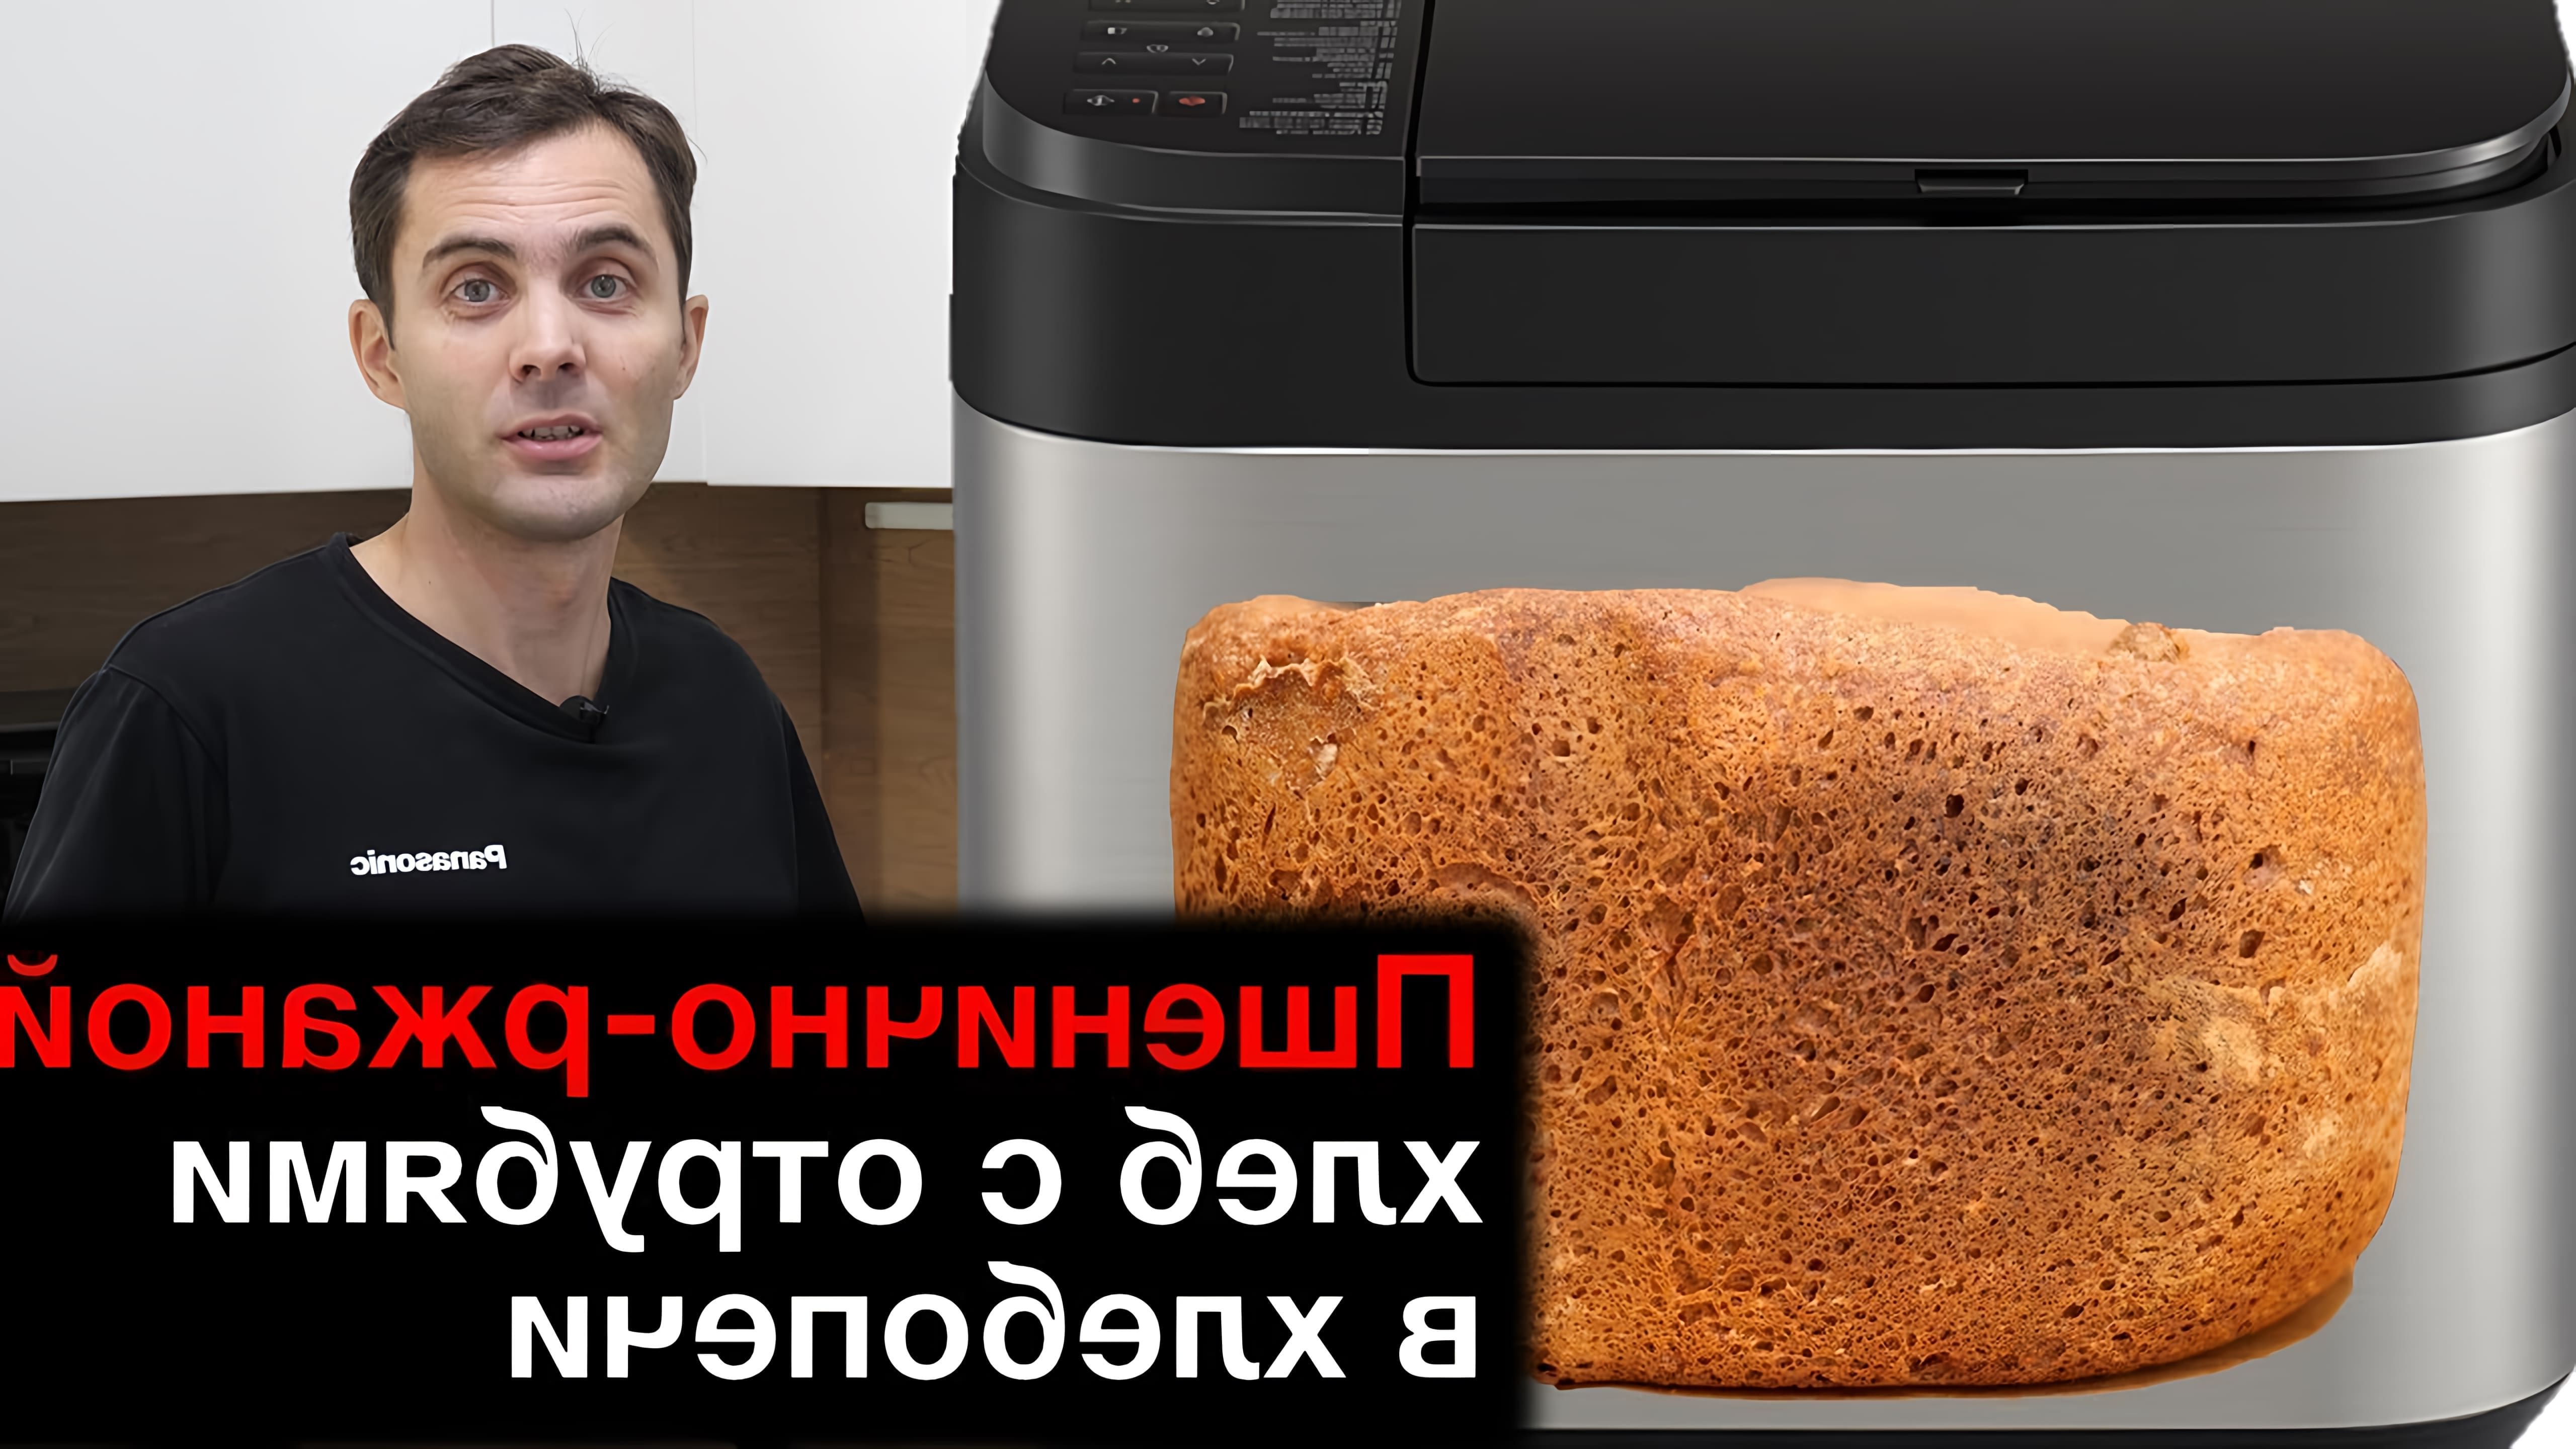 В данном видео Юрий Железняков показывает процесс приготовления пшенично-ржаного хлеба с отрубями в хлебопечке Panasonic